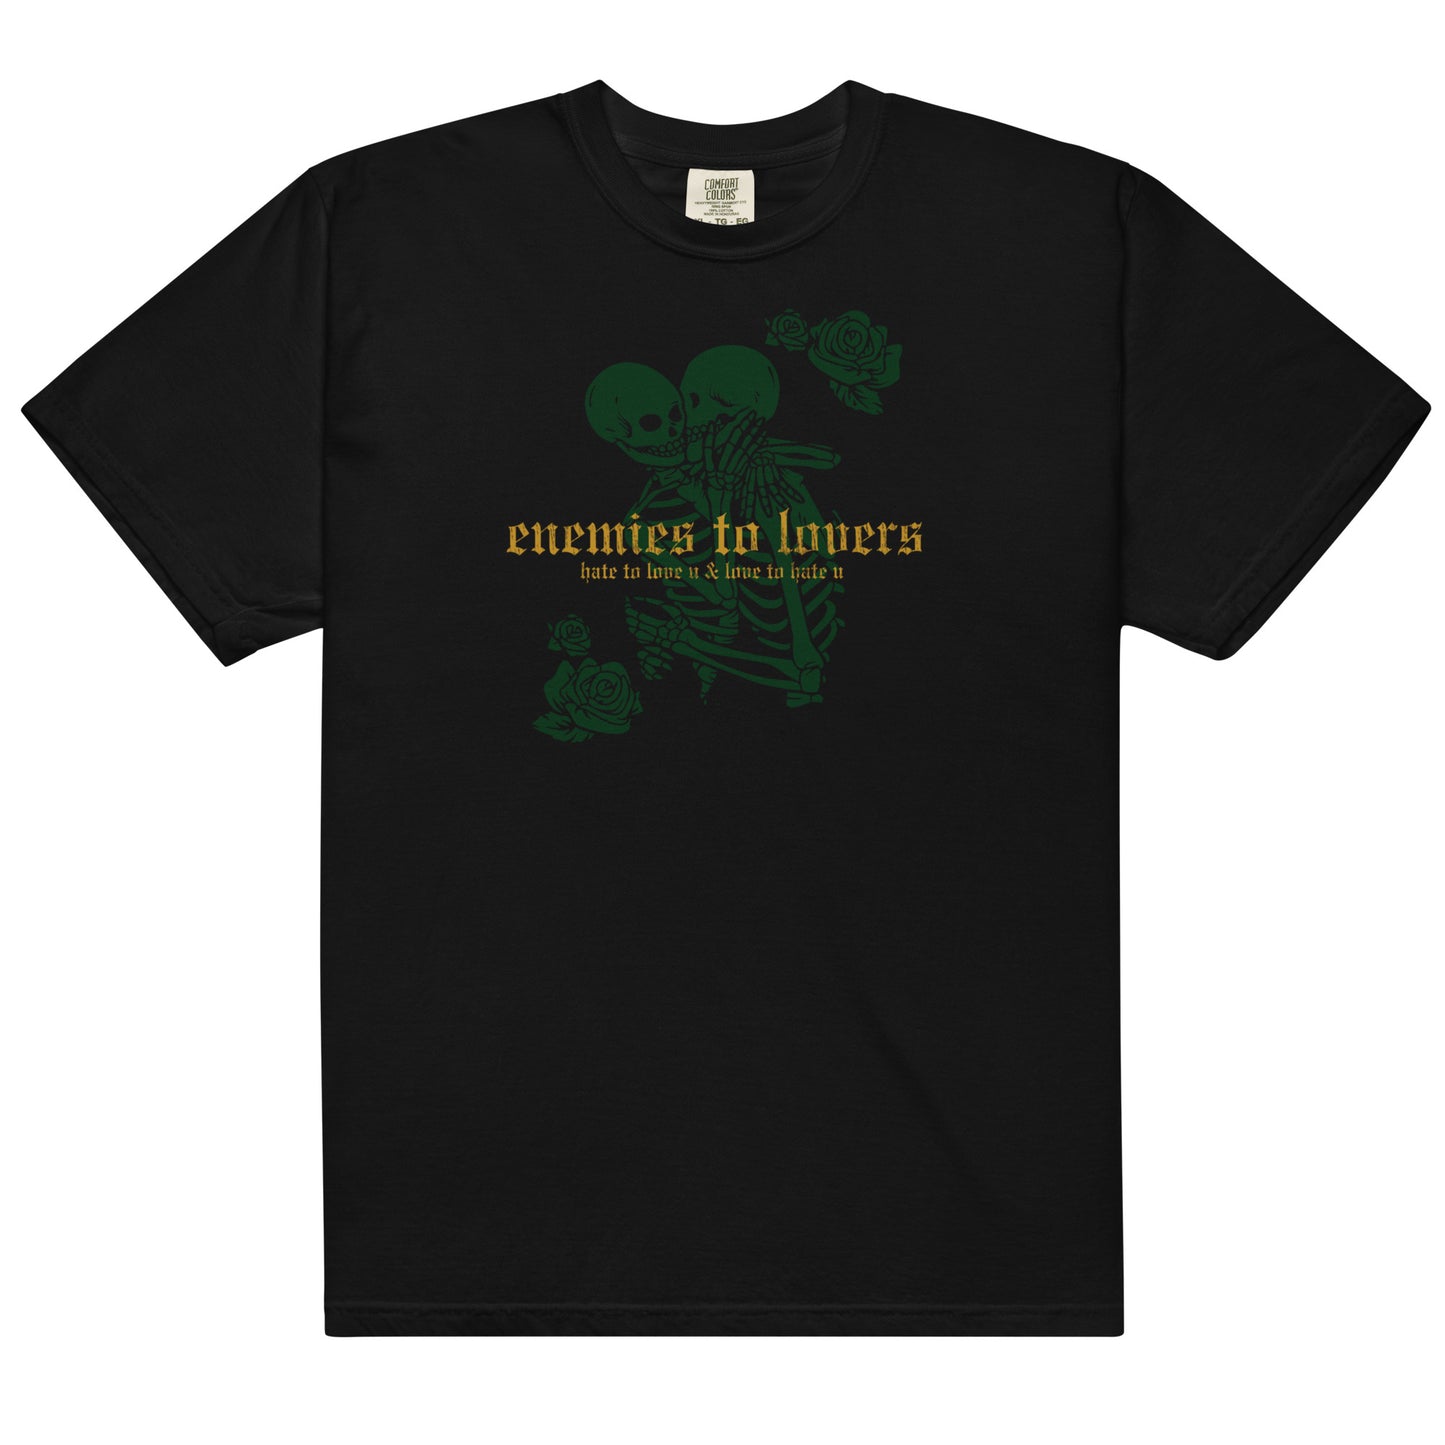 enemies to lovers t-shirt in black